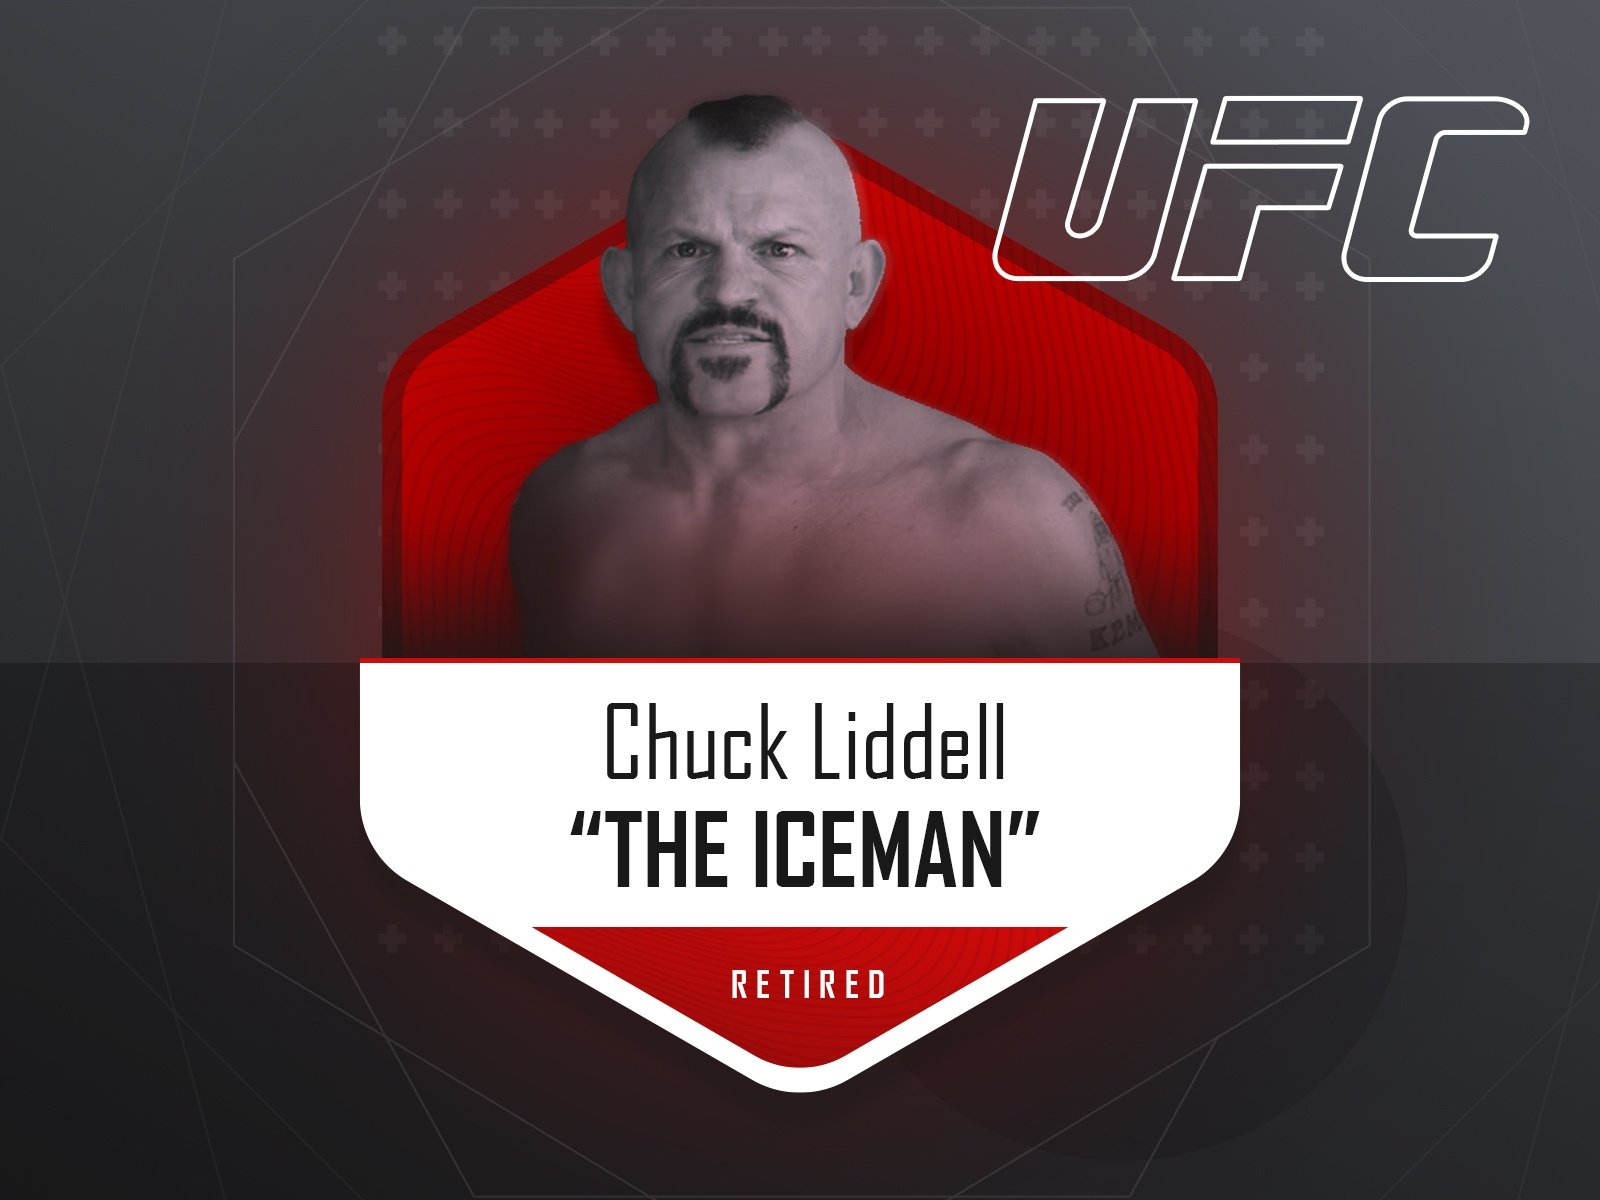 Chuck Liddell - UFC fighter